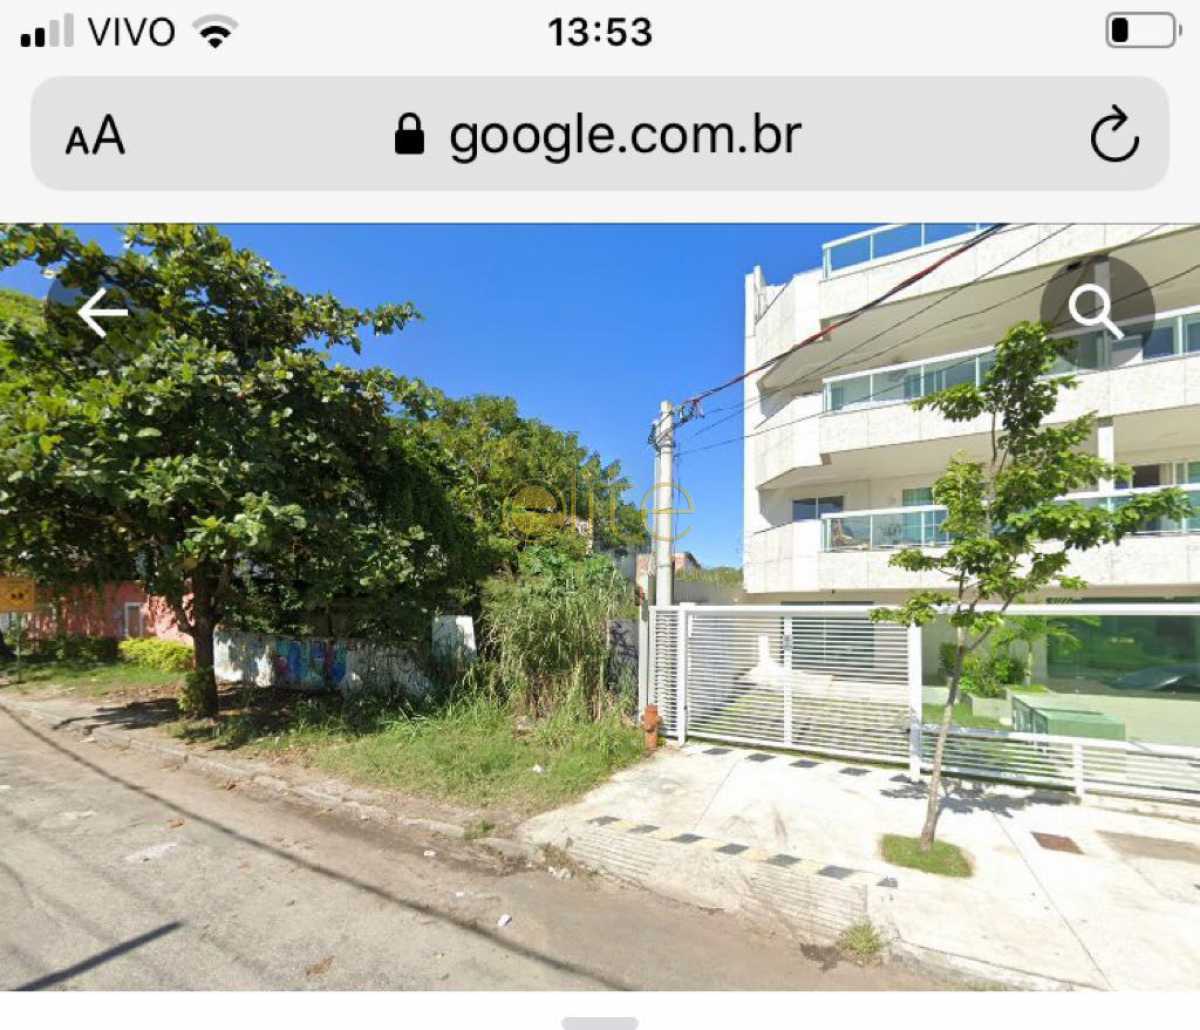 foto terreno 3 - Terreno Residencial à venda Recreio dos Bandeirantes, Rio de Janeiro - R$ 1.500.000 - EBTR00005 - 3